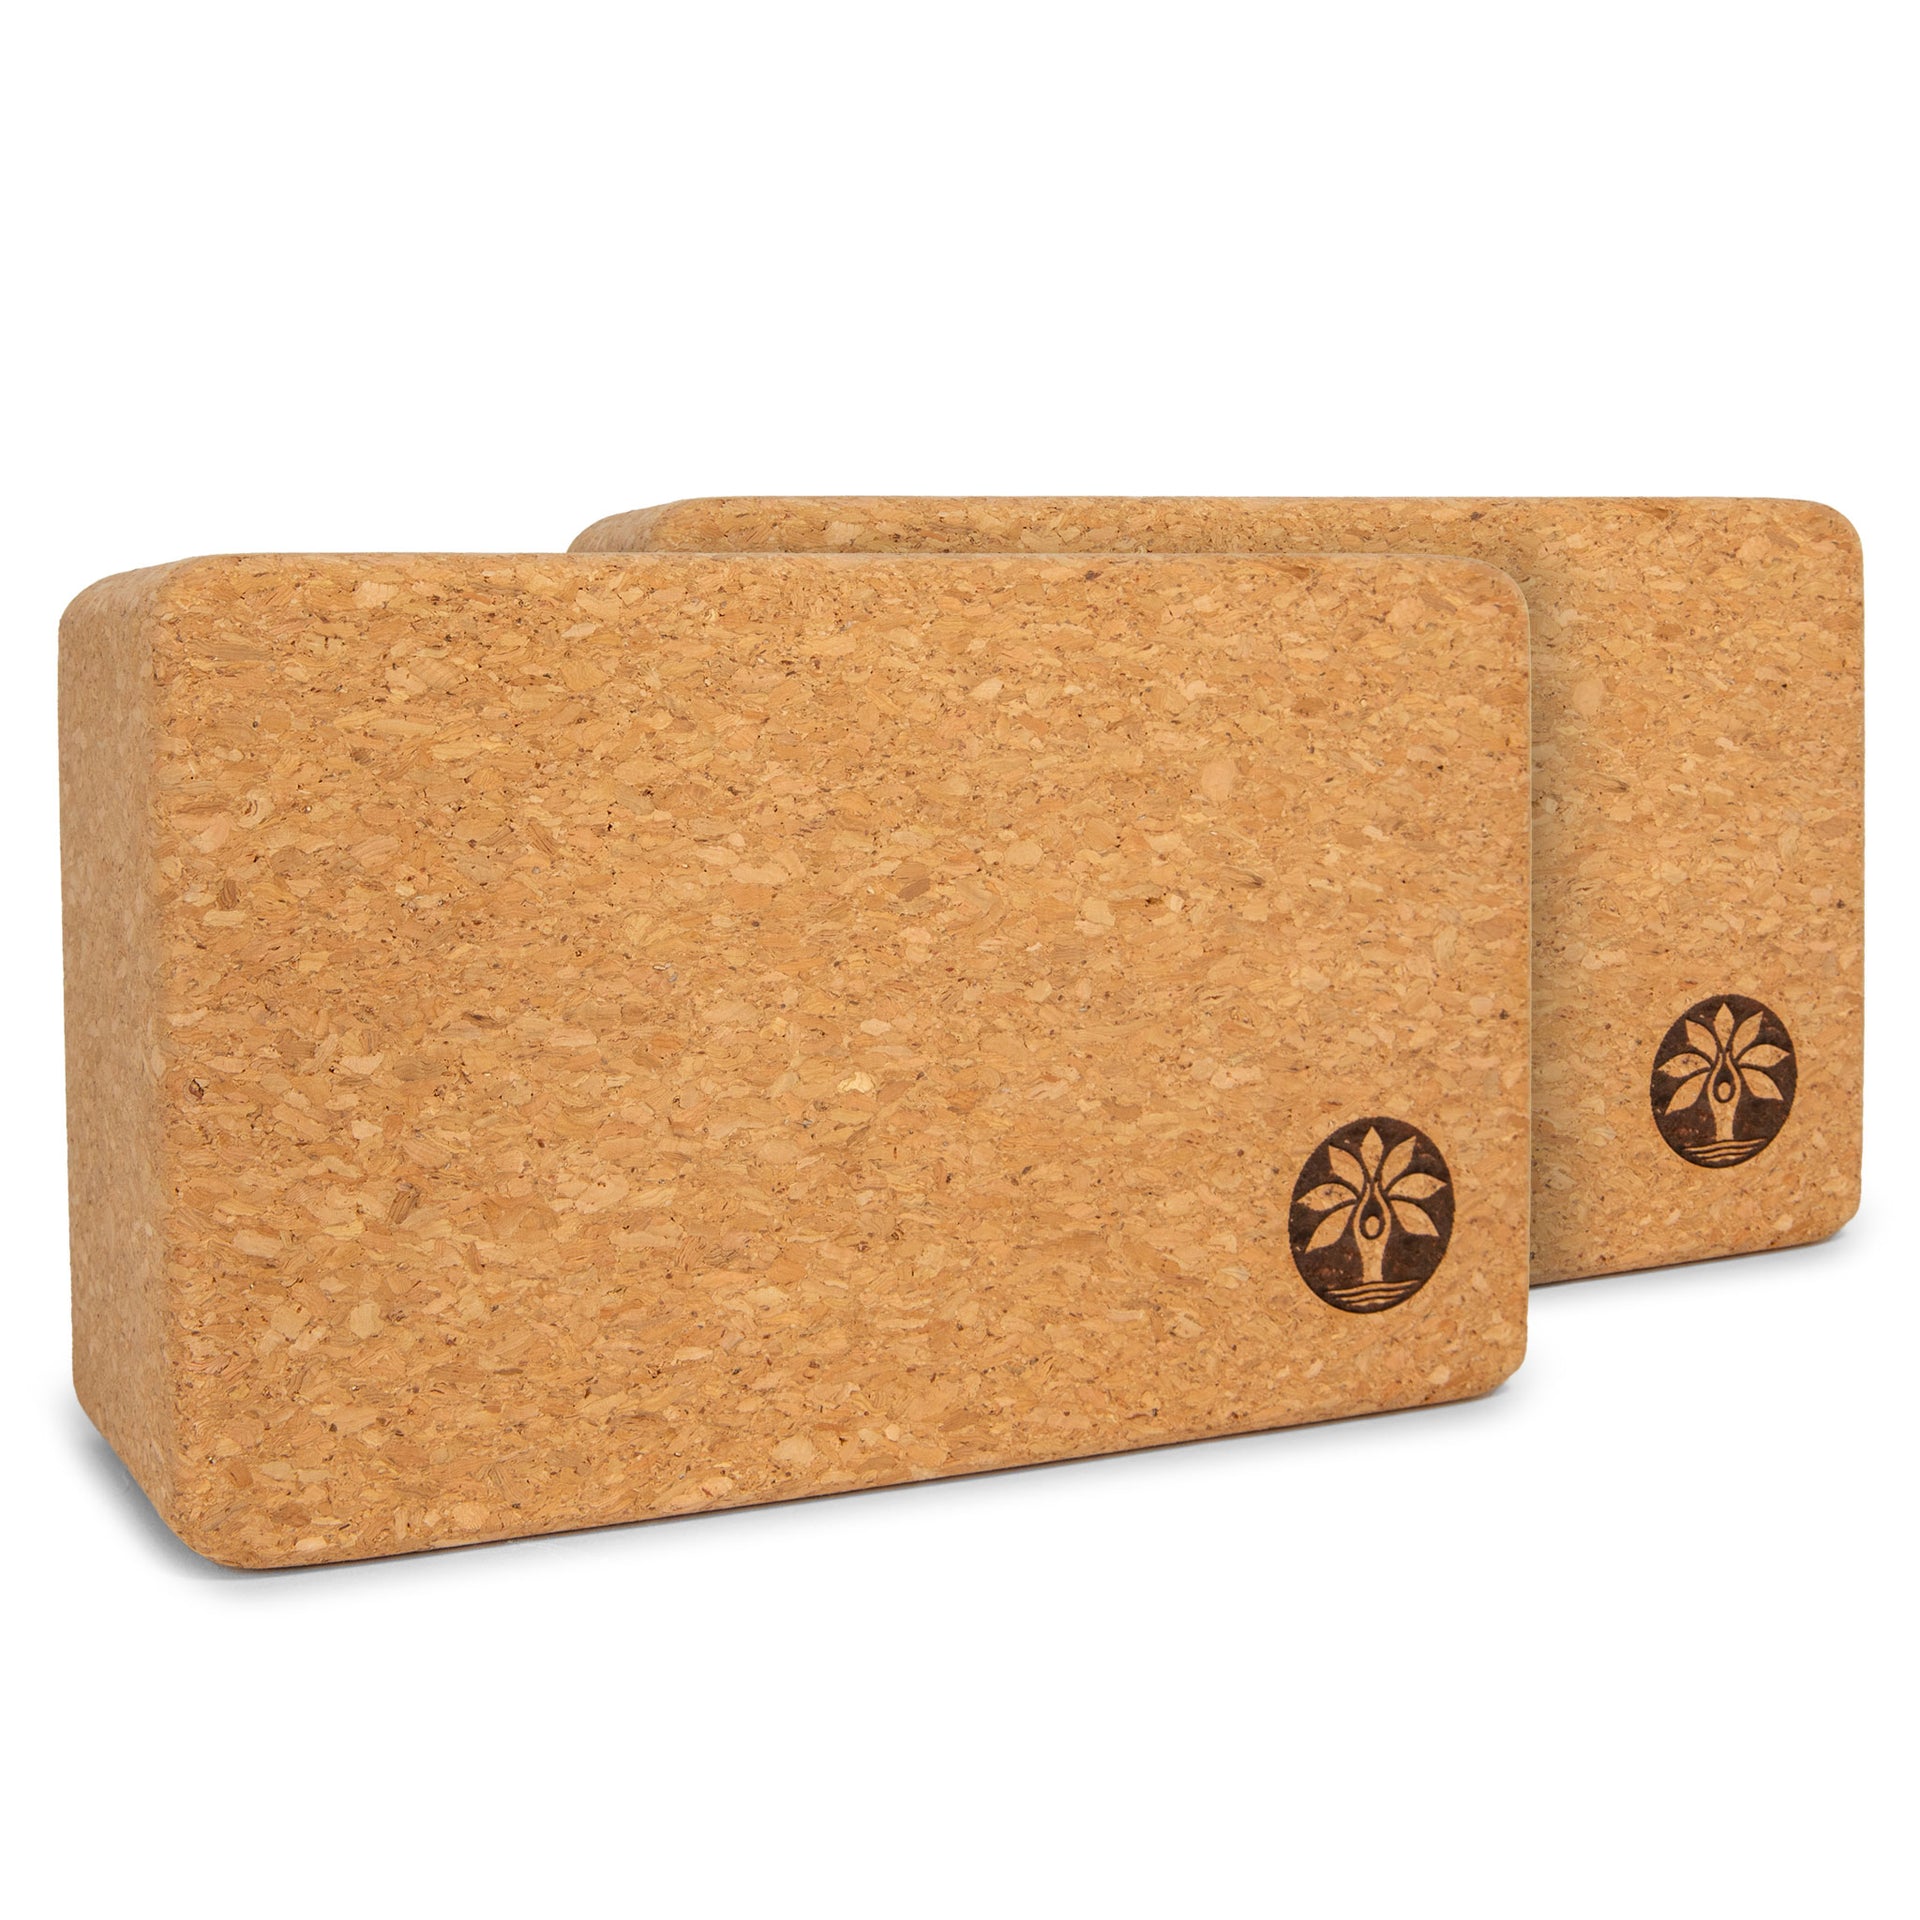 Cork Yoga Block 2 Pack Plus Strap Cork Yoga Bricks Natural Eco